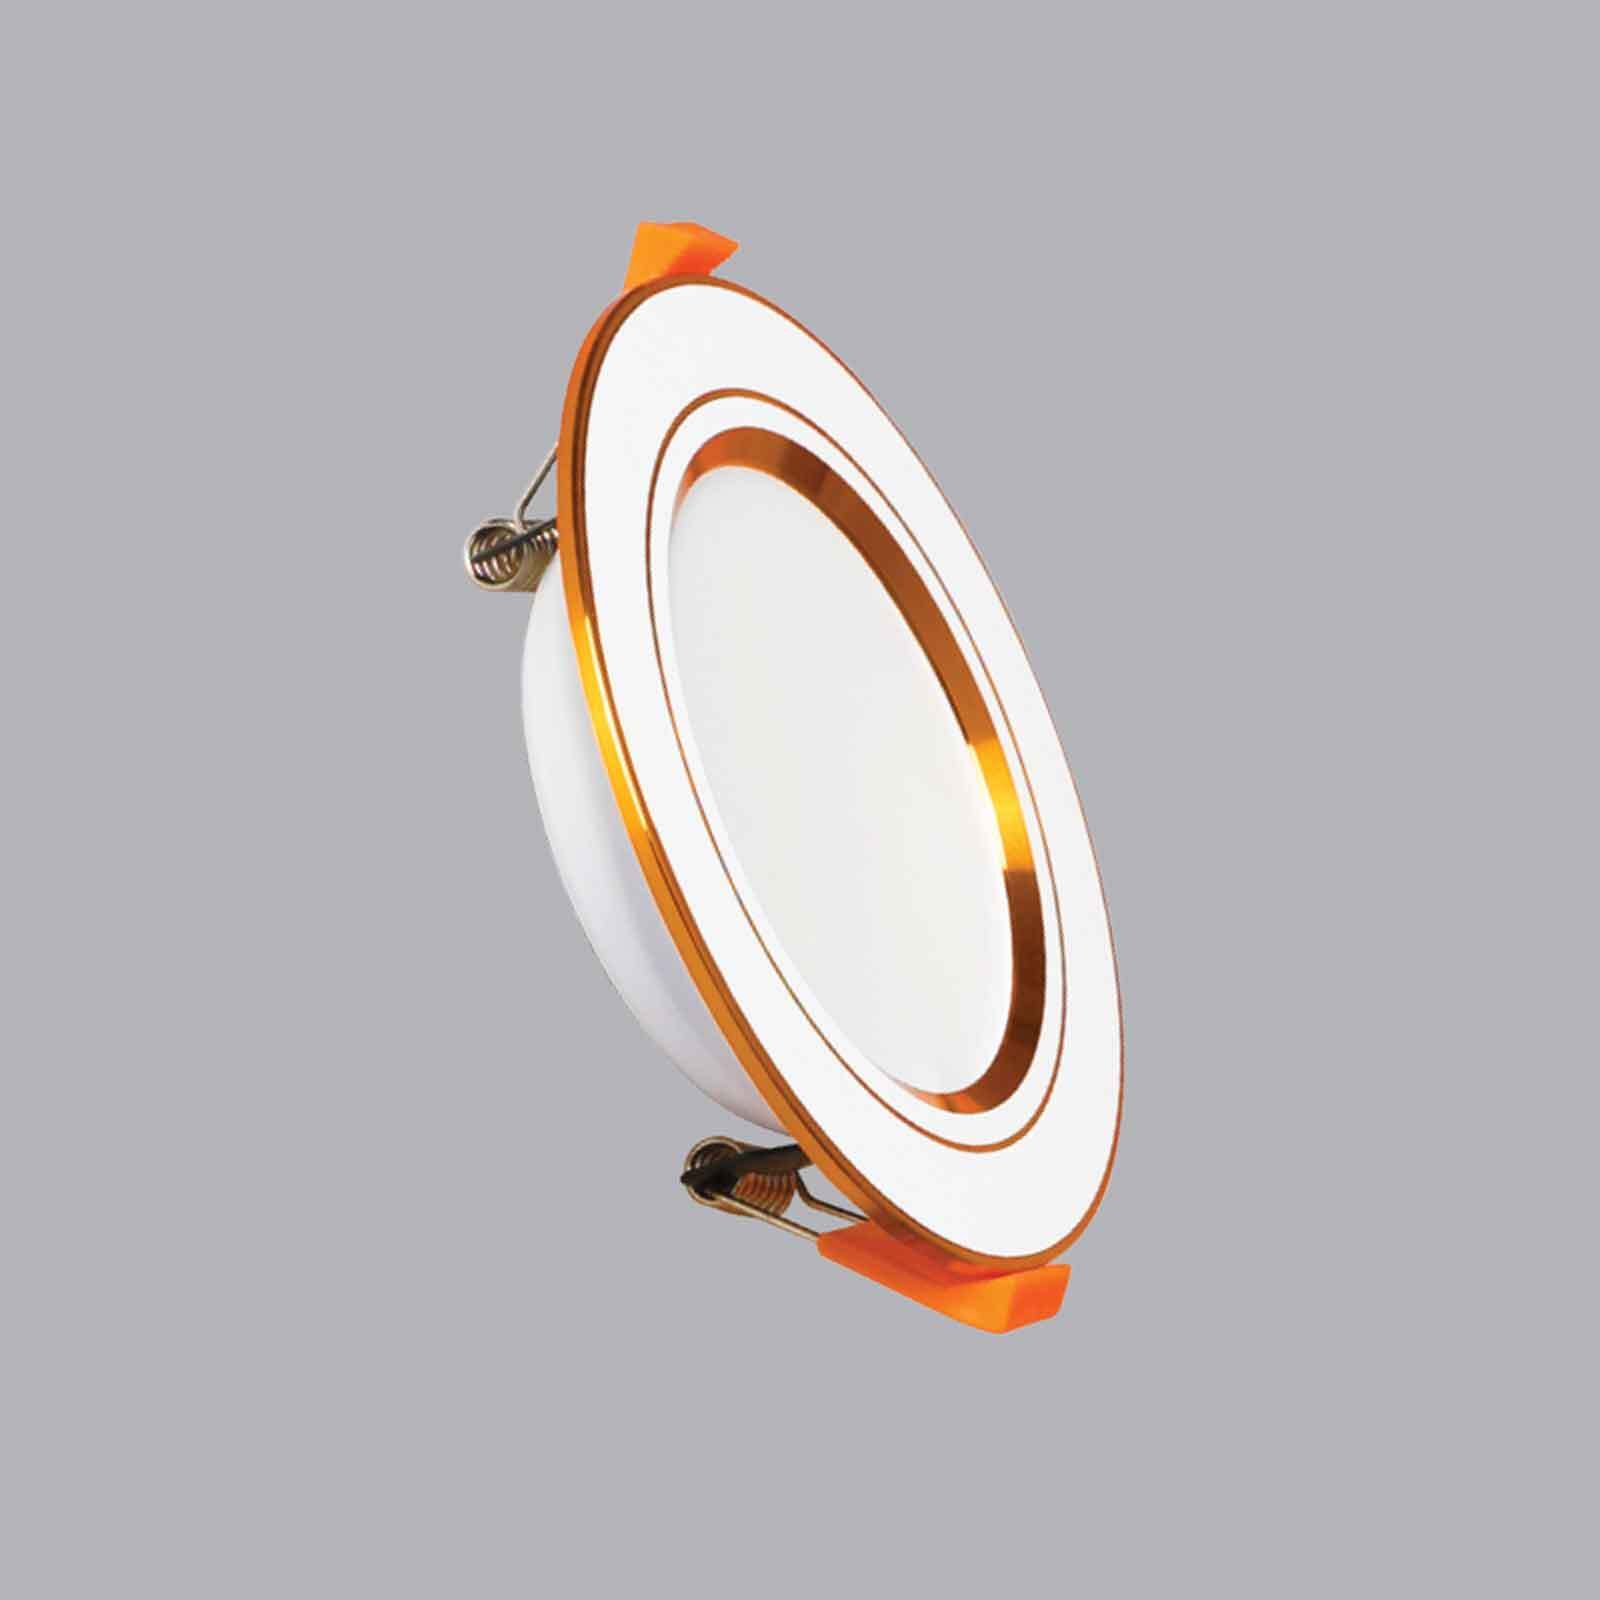 Đèn LED downlight 5W – Ø110mm âm trần viền vàng, ánh sáng trung tính, MPE, mã DLV-5N